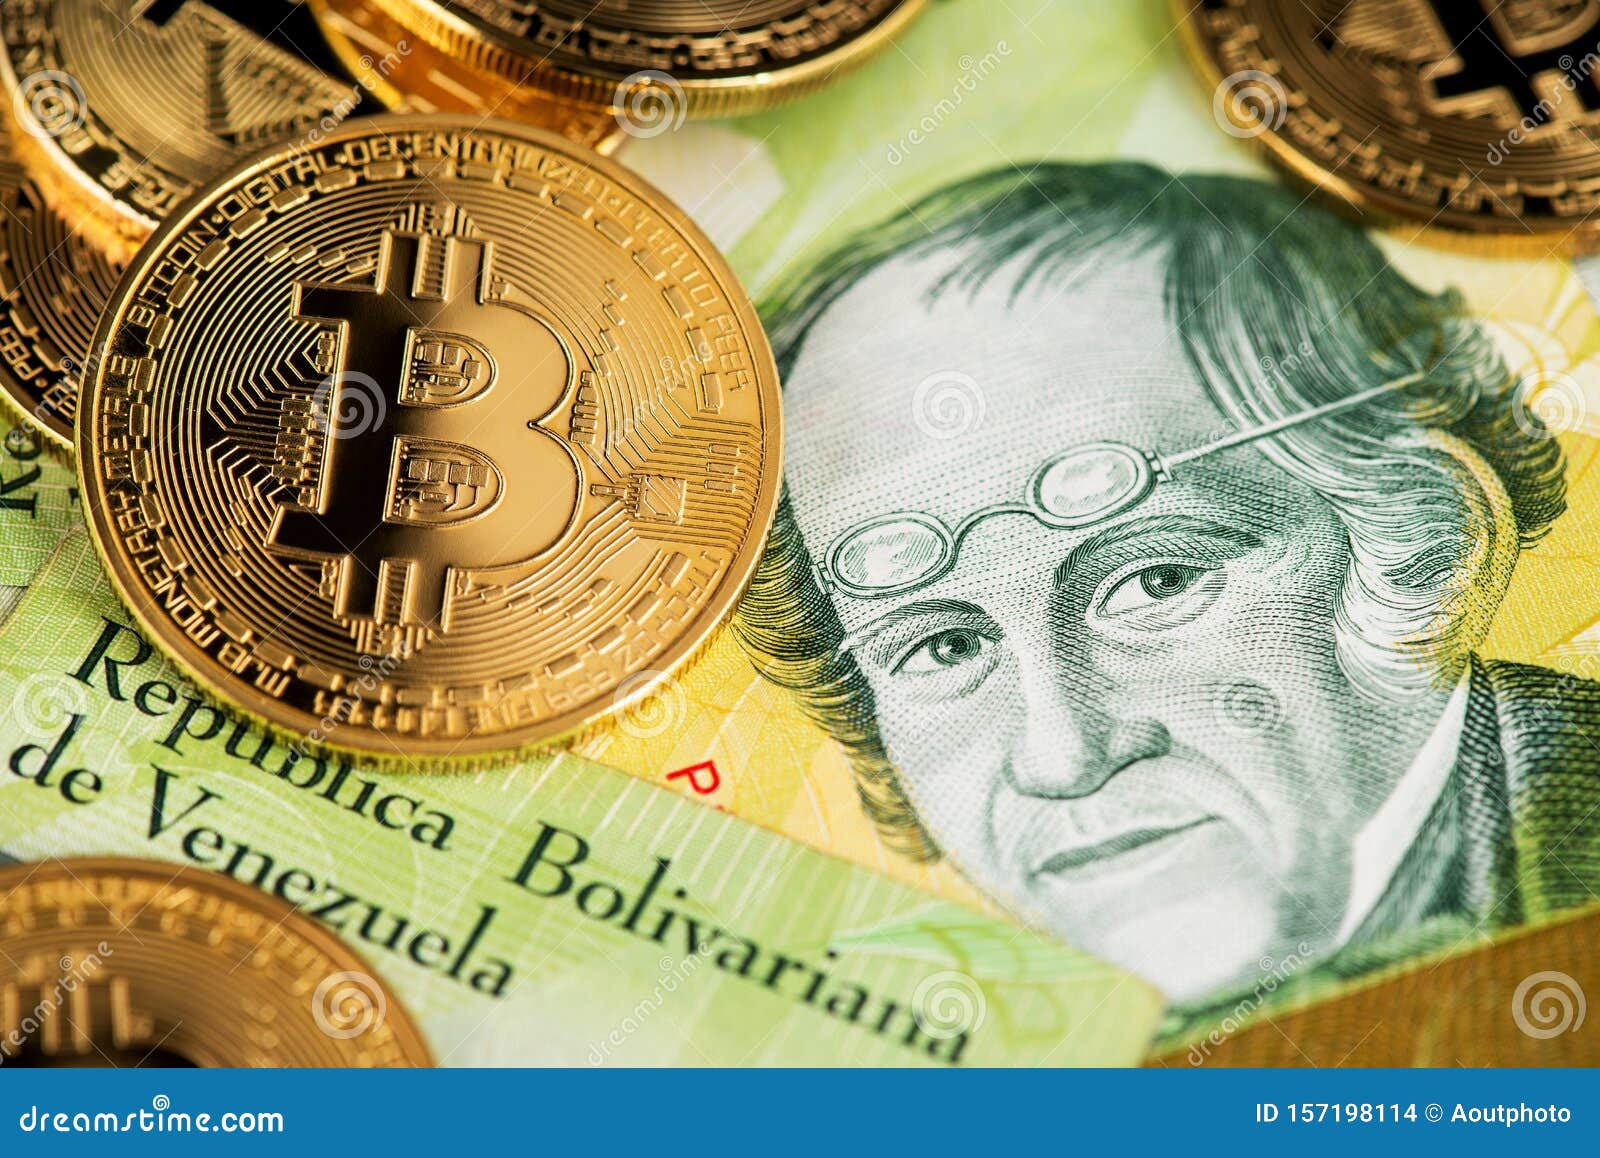 bolivar bitcoin coinmarketcap bitcoin chart